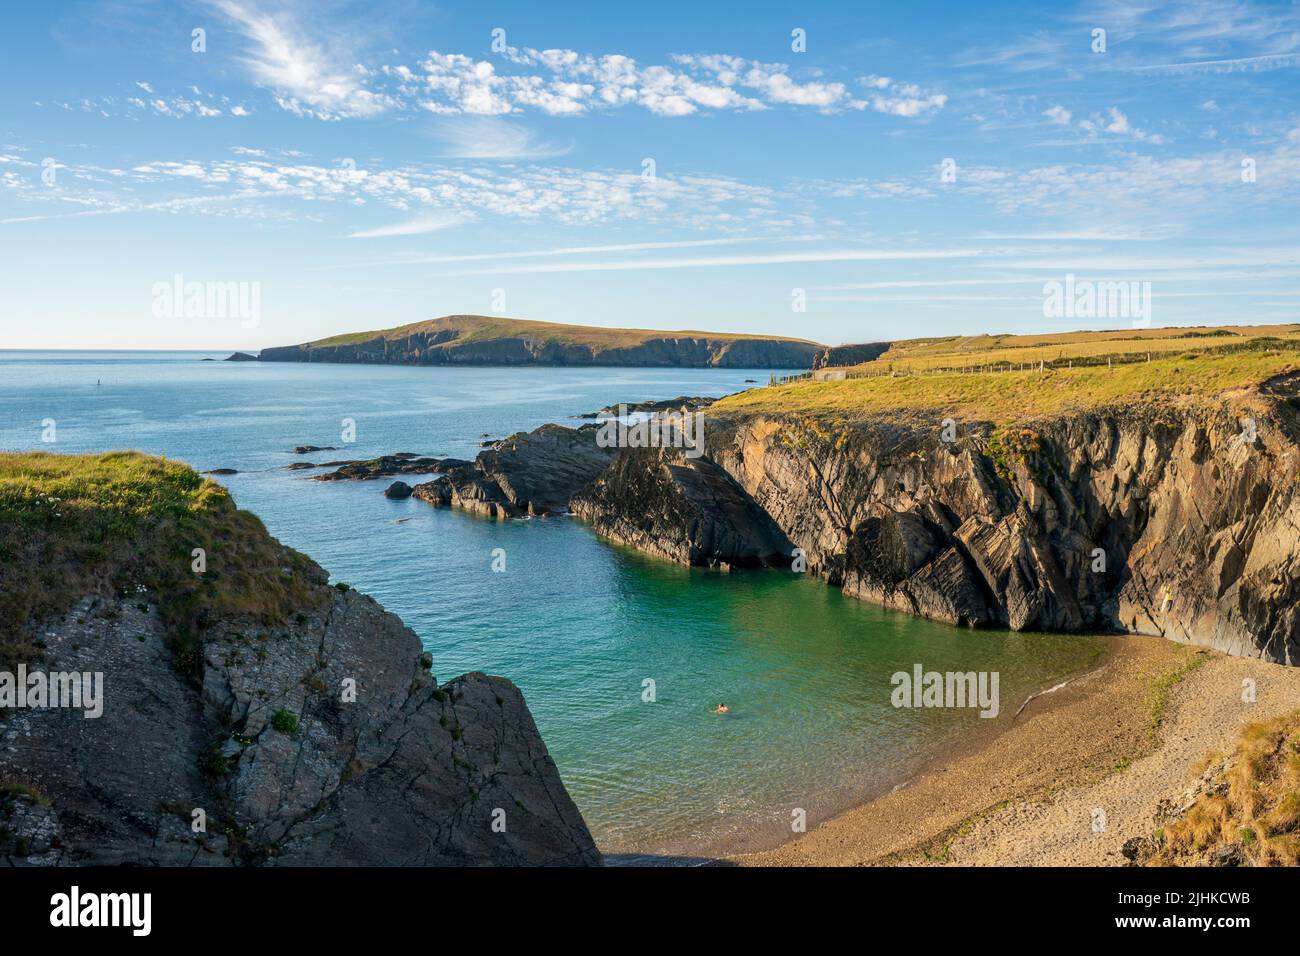 Una vista paesaggistica della costa della baia di cardigan con l'isola in lontananza nel Galles Occidentale Foto Stock